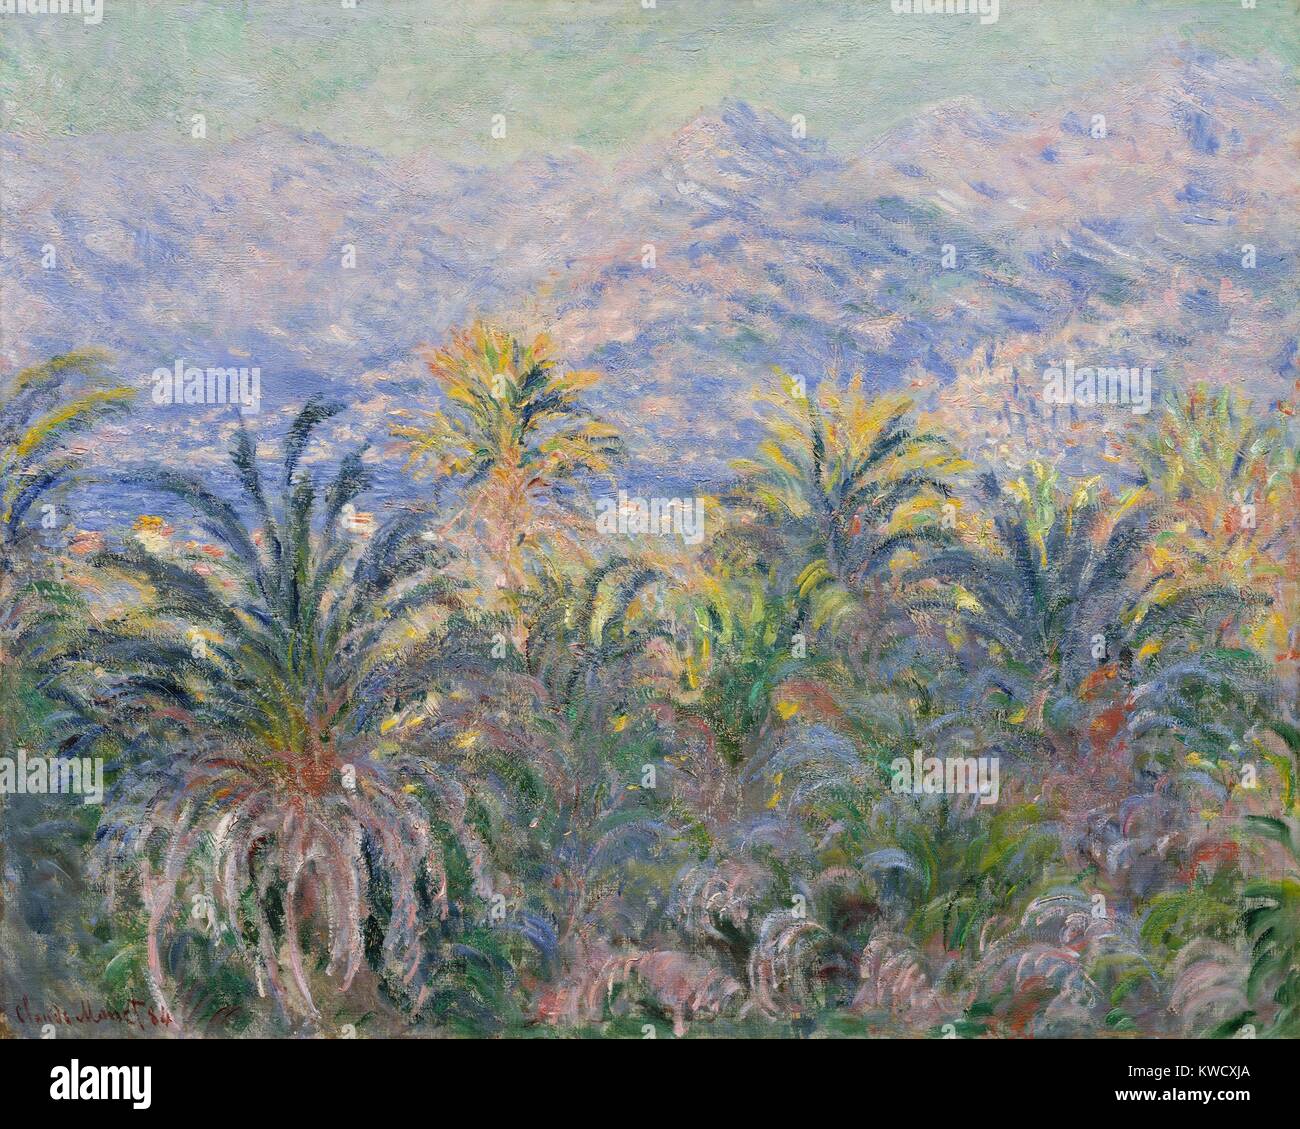 Palmiers à Bordighera, Claude Monet, 1884, la peinture impressionniste français, huile sur toile. Monet peint cette dans la Riviera italienne, à l'ouest de l'autre côté de la baie de Vintimille et vers les Alpes Maritimes (BSLOC 2017 3 37) Banque D'Images